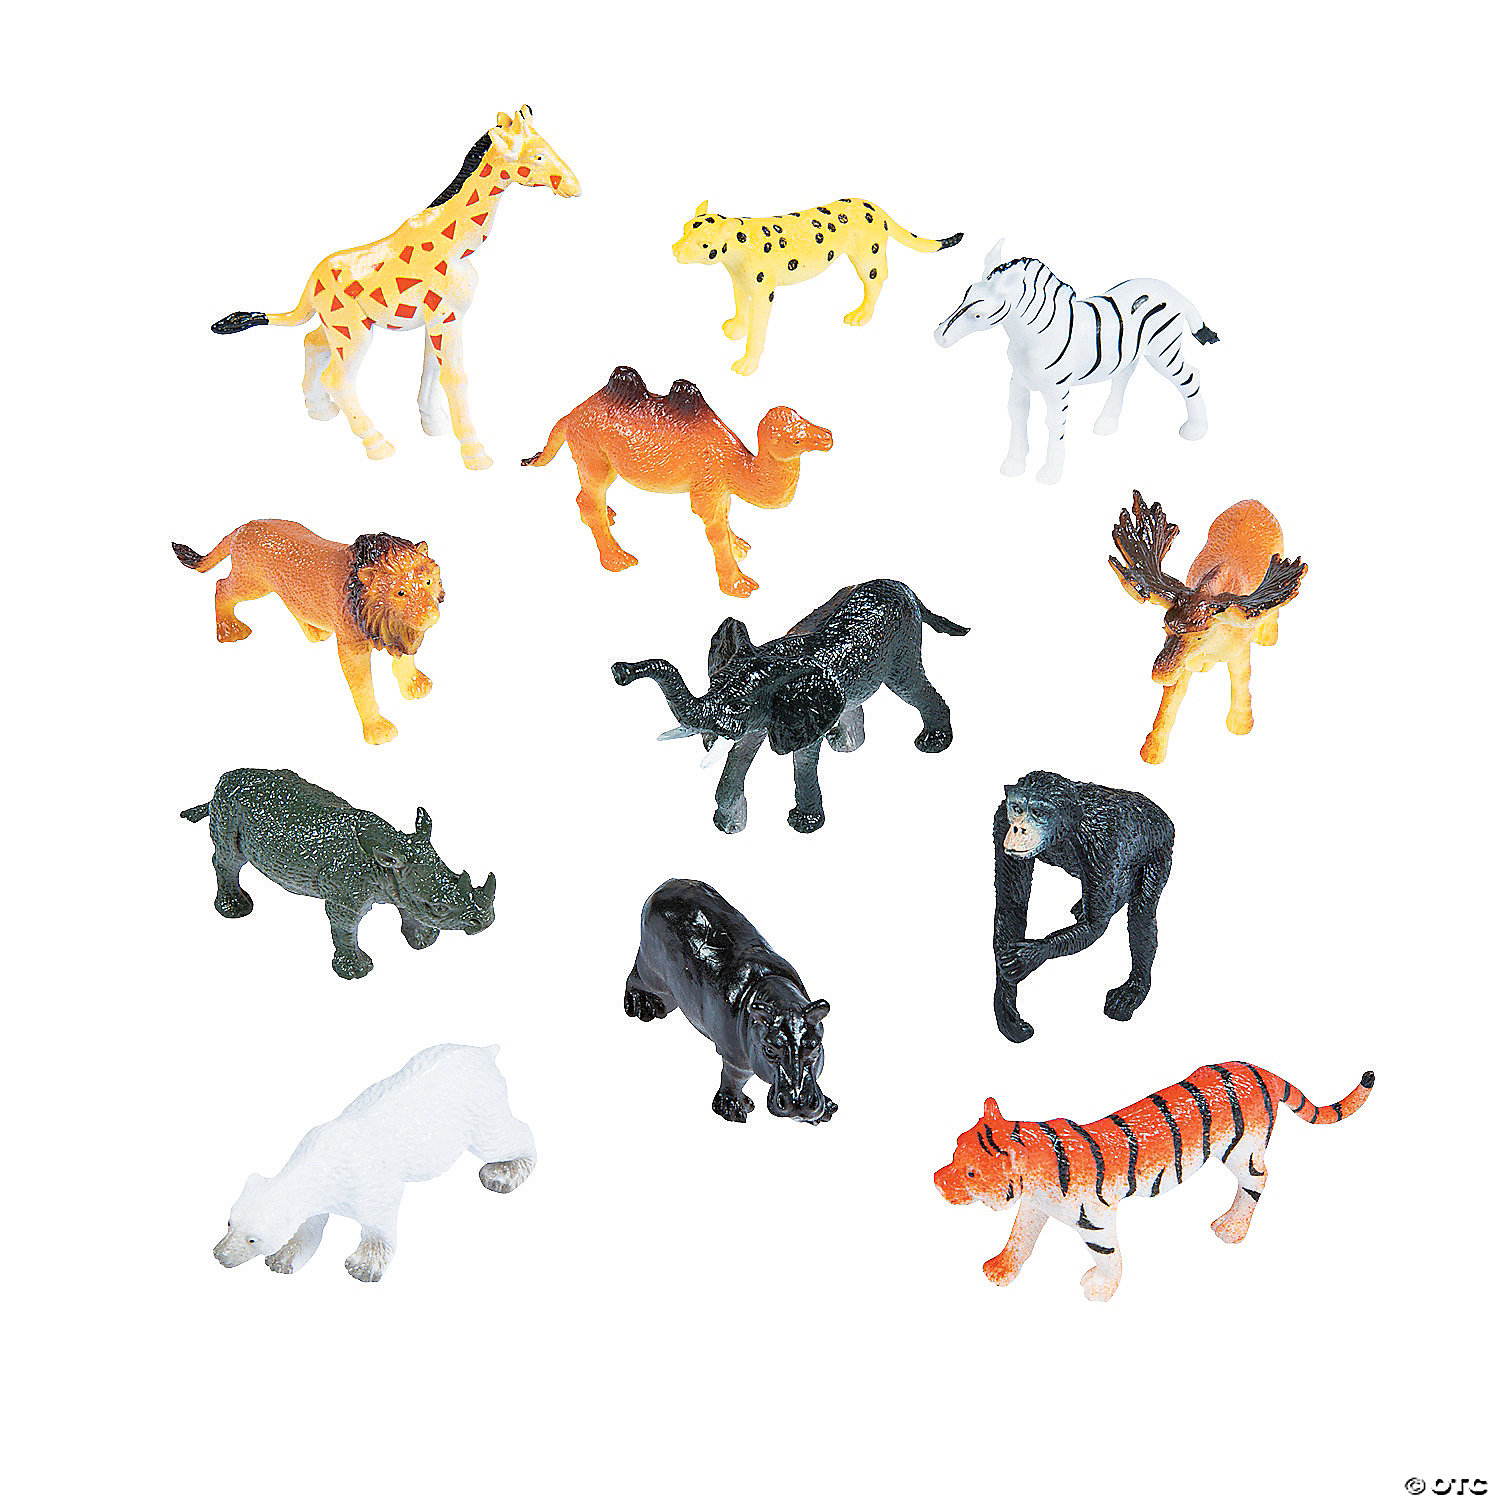 zoo animal figures